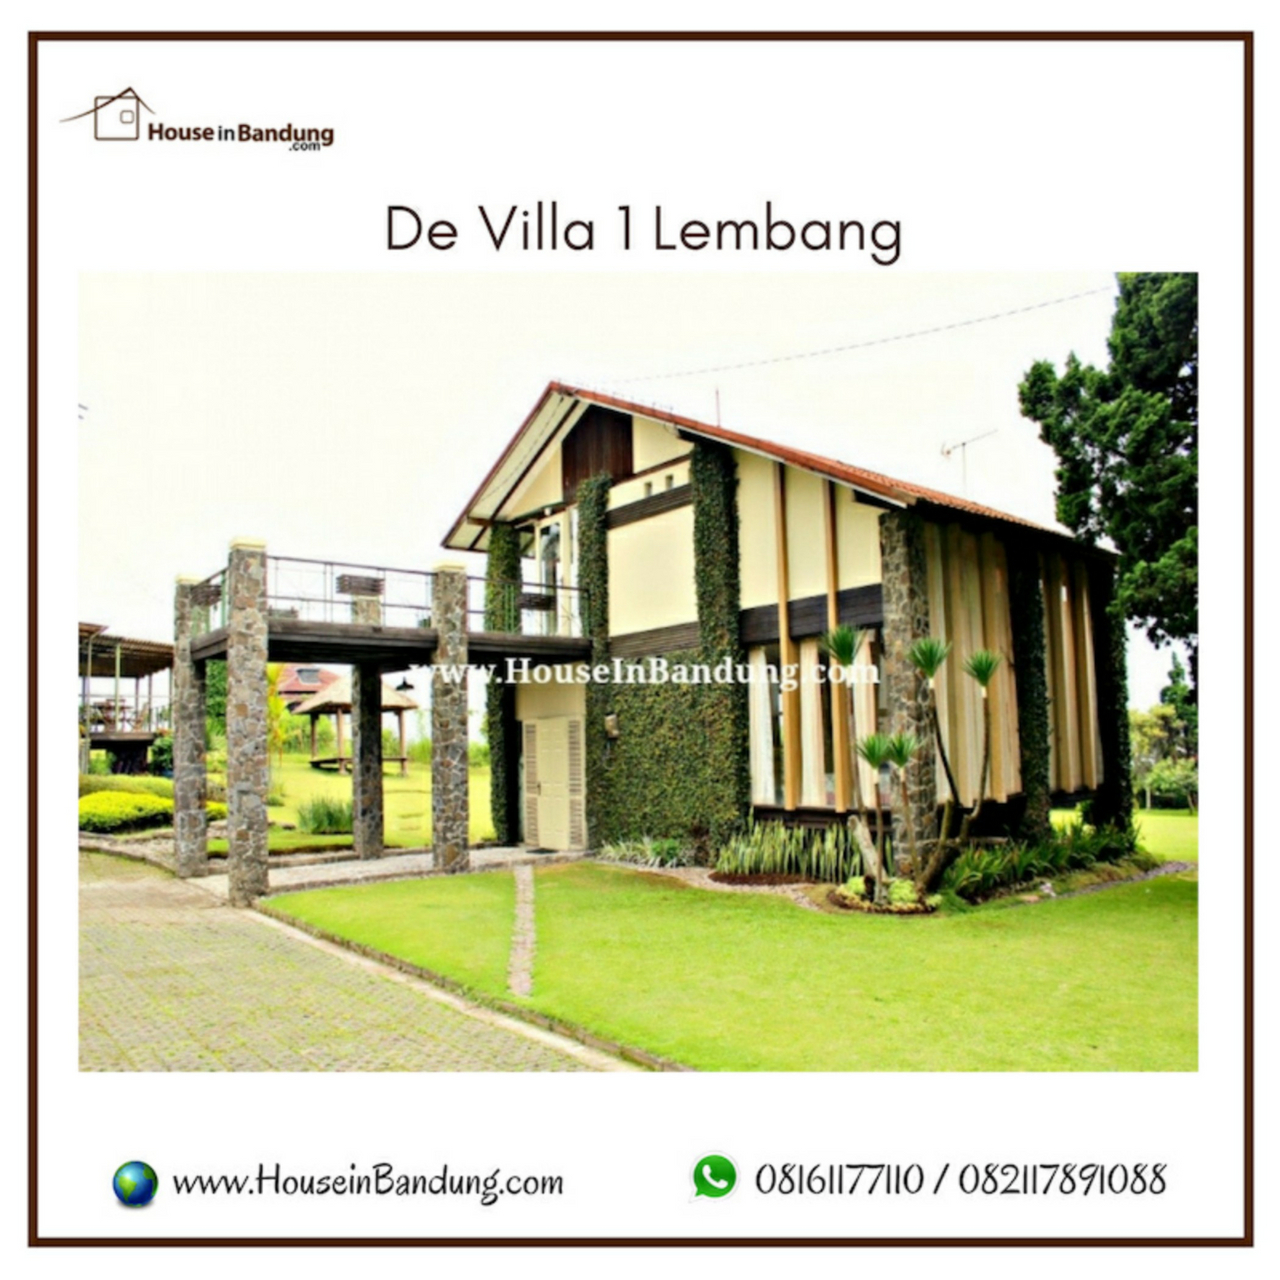 De Villa Istana Bunga by HouseinBandung, Bandung